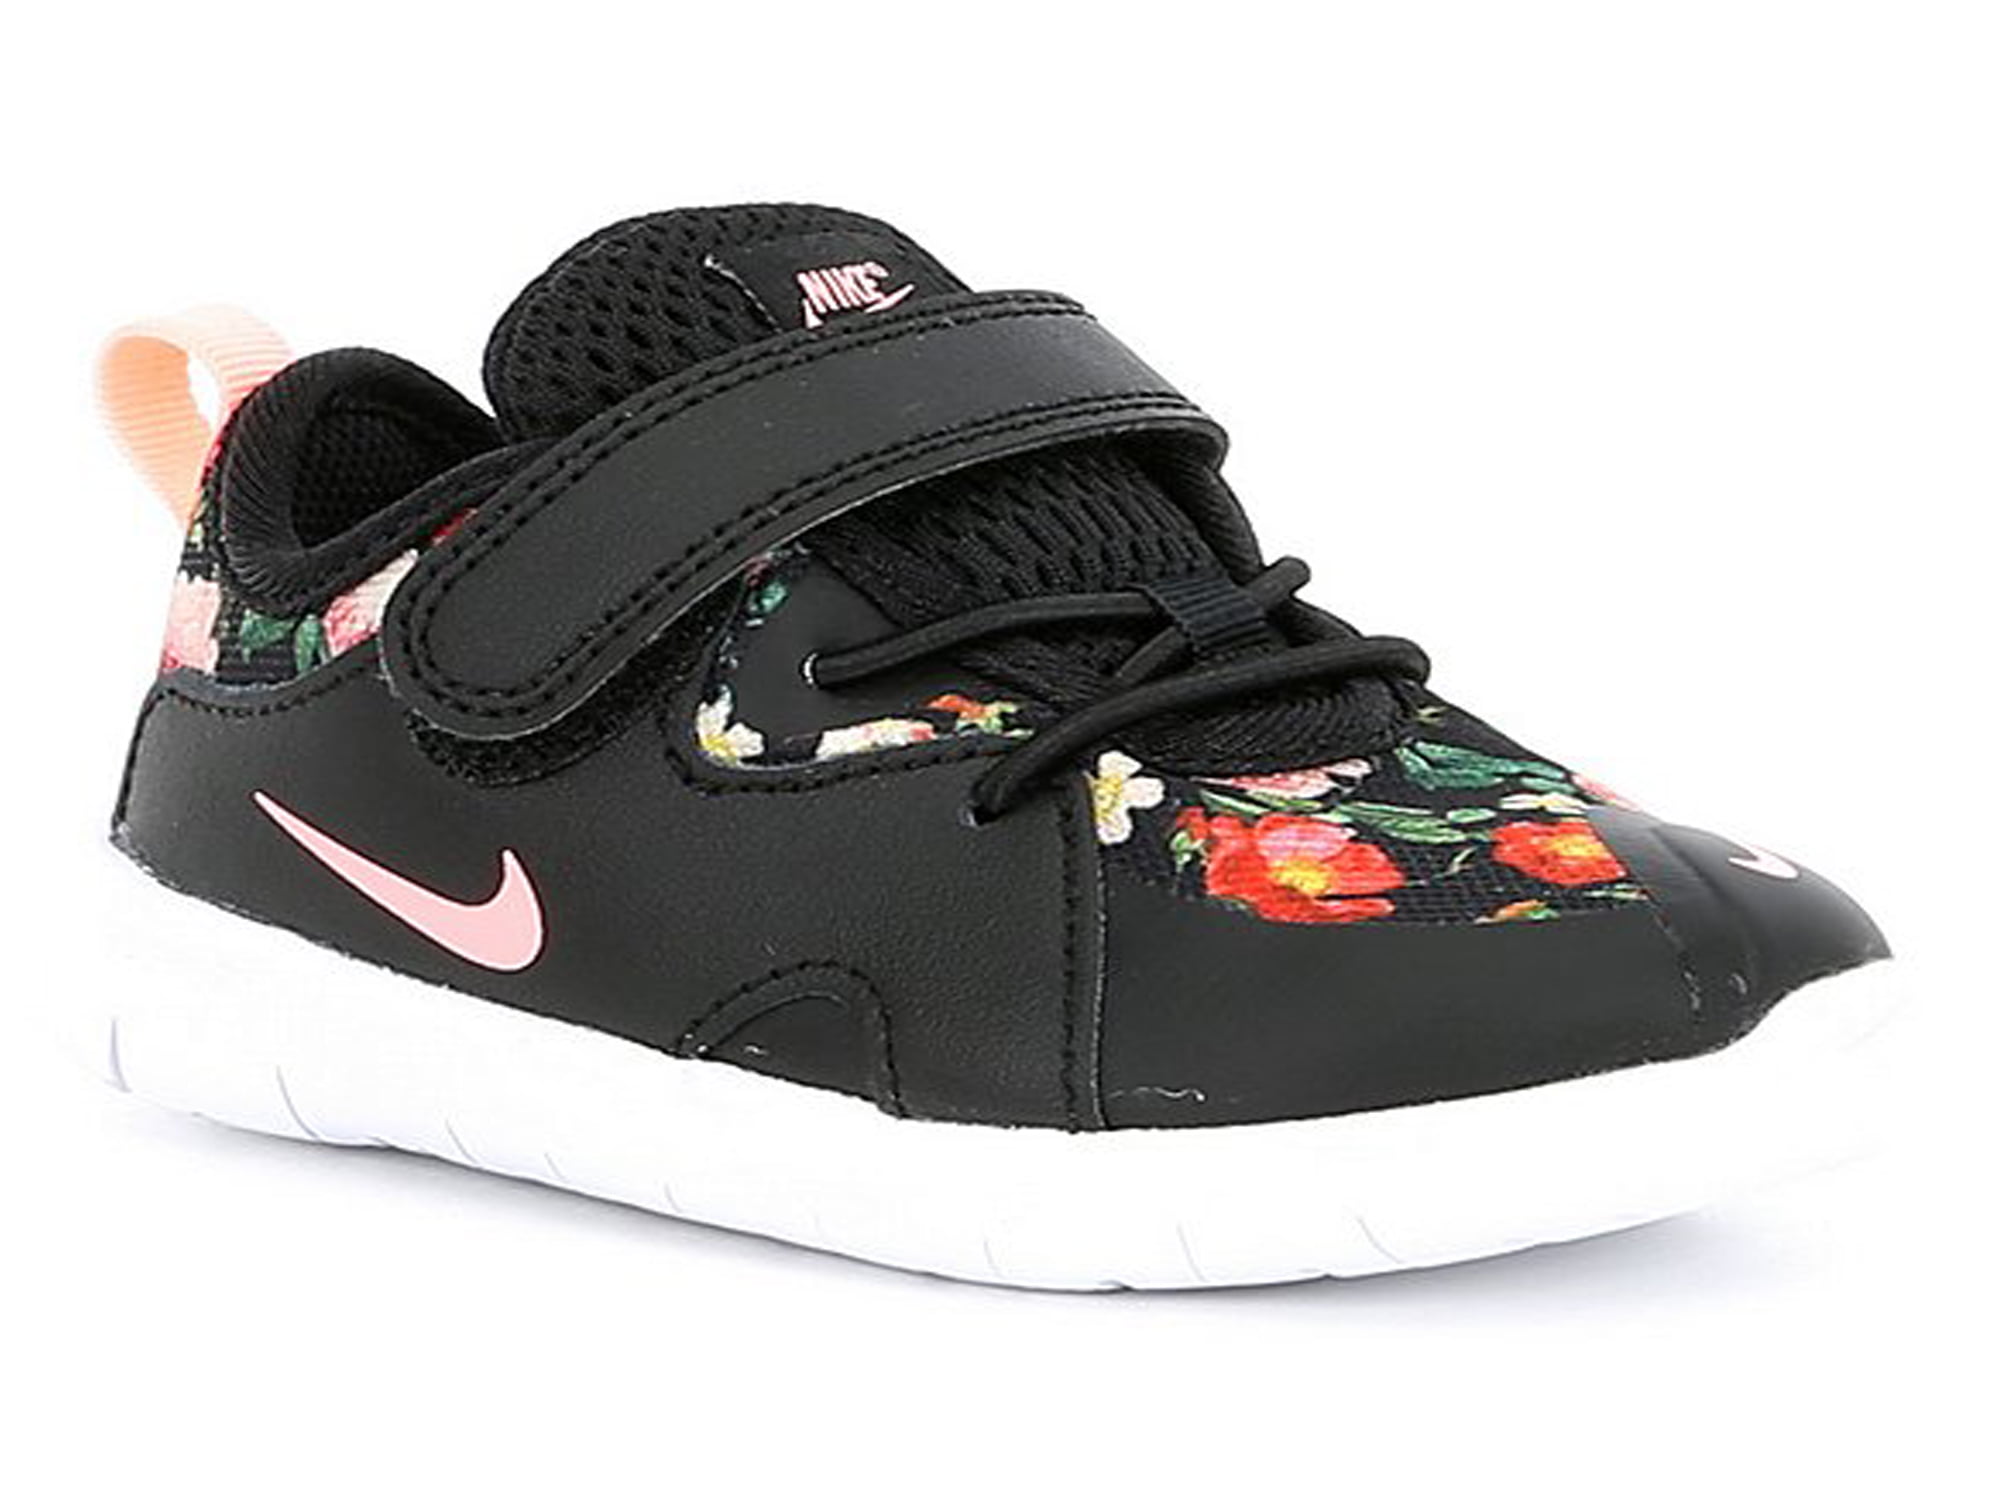 Nike Contact 3 VF (TDV) Black/Pink Toddler size: 8c -